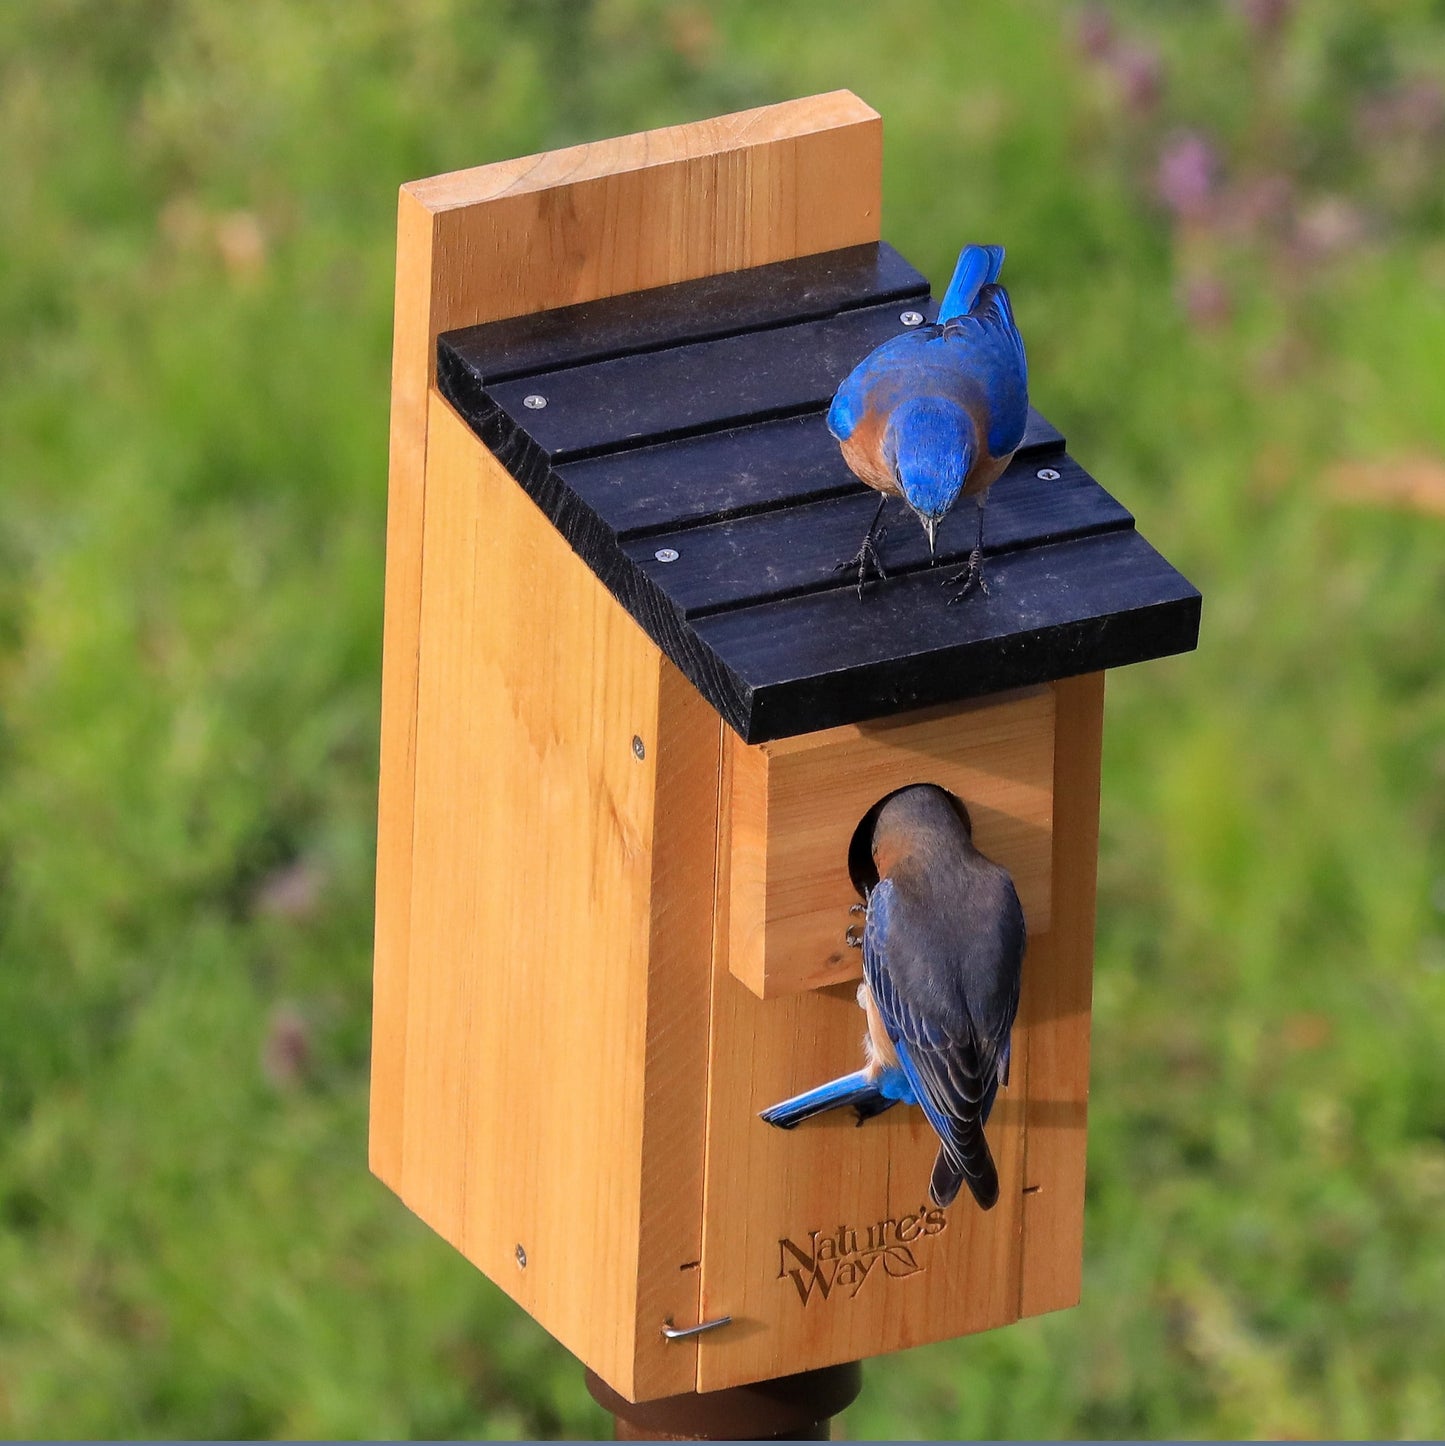 'Nature's Way Cedar Bluebird Box House, Brown